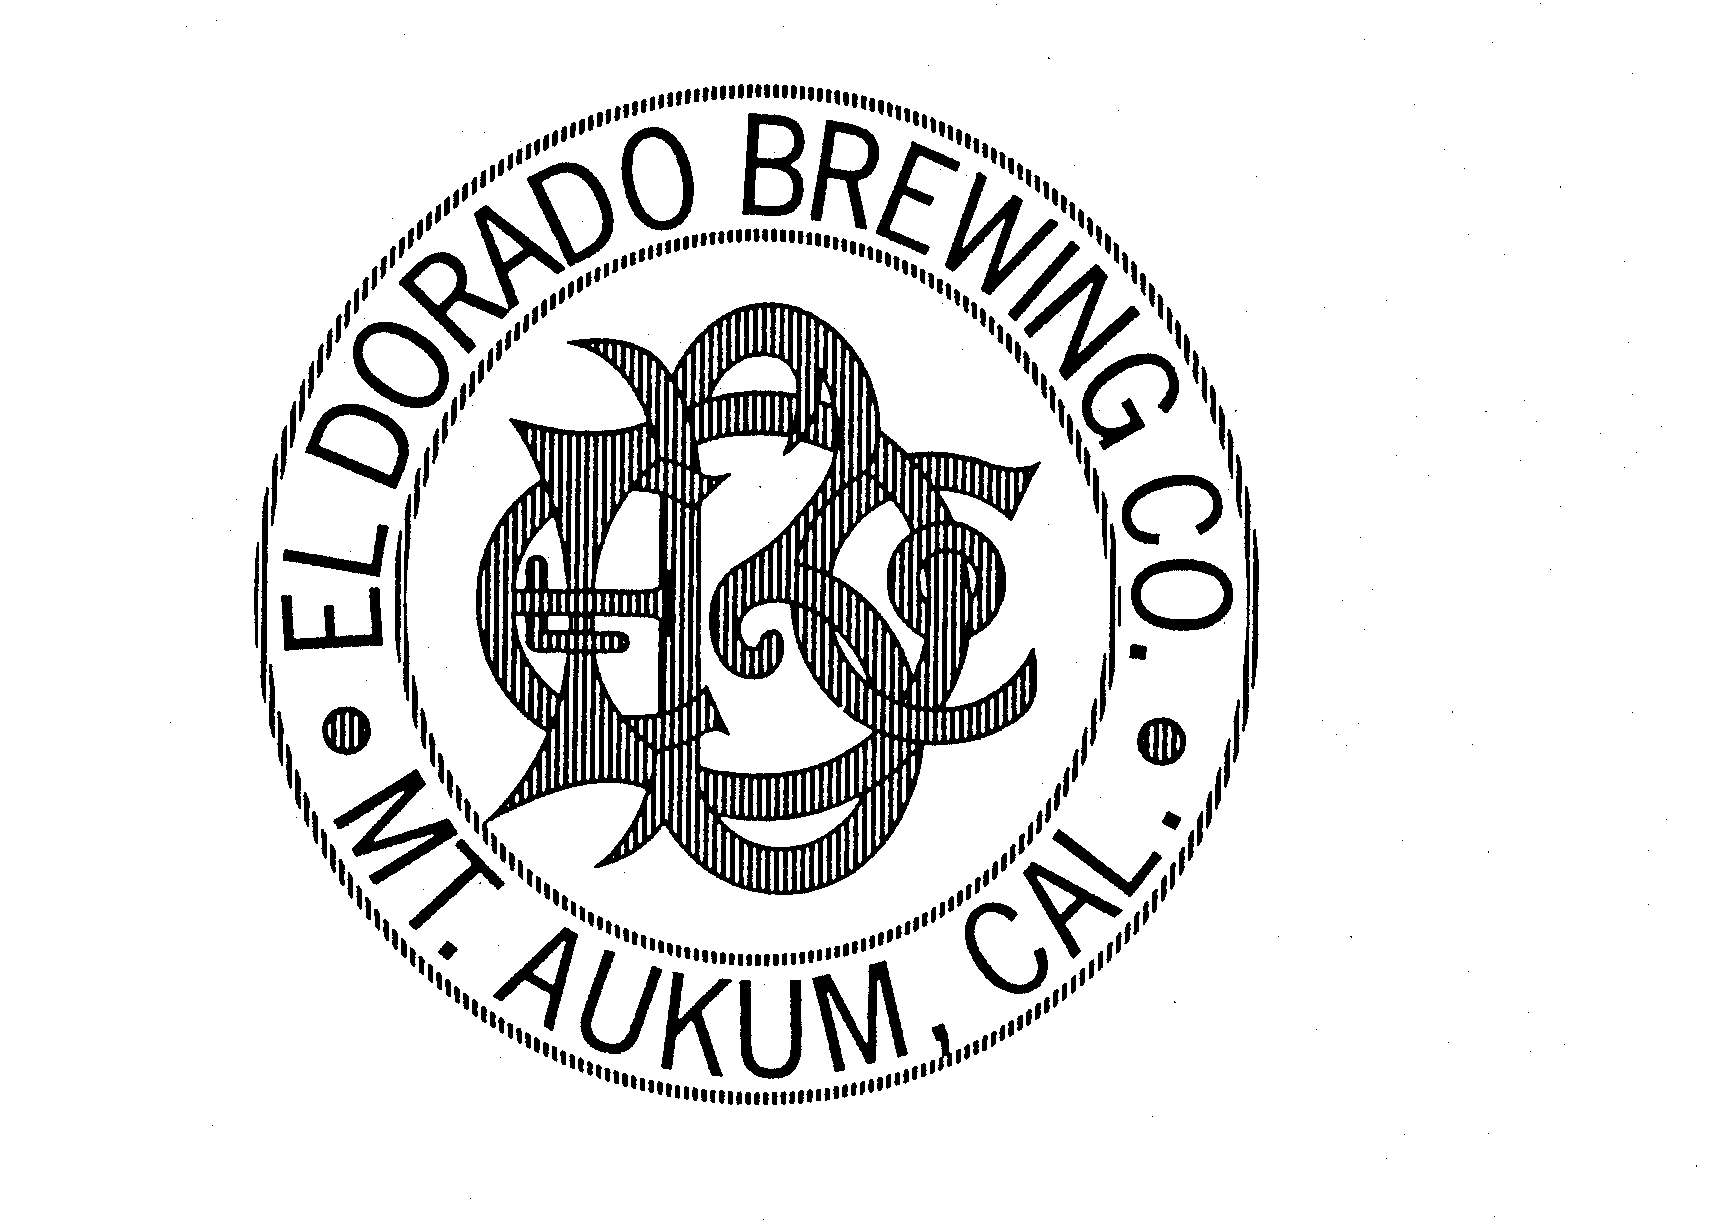  ELDBCO EL DORADO BREWING CO. MT. AUKUM, CAL.